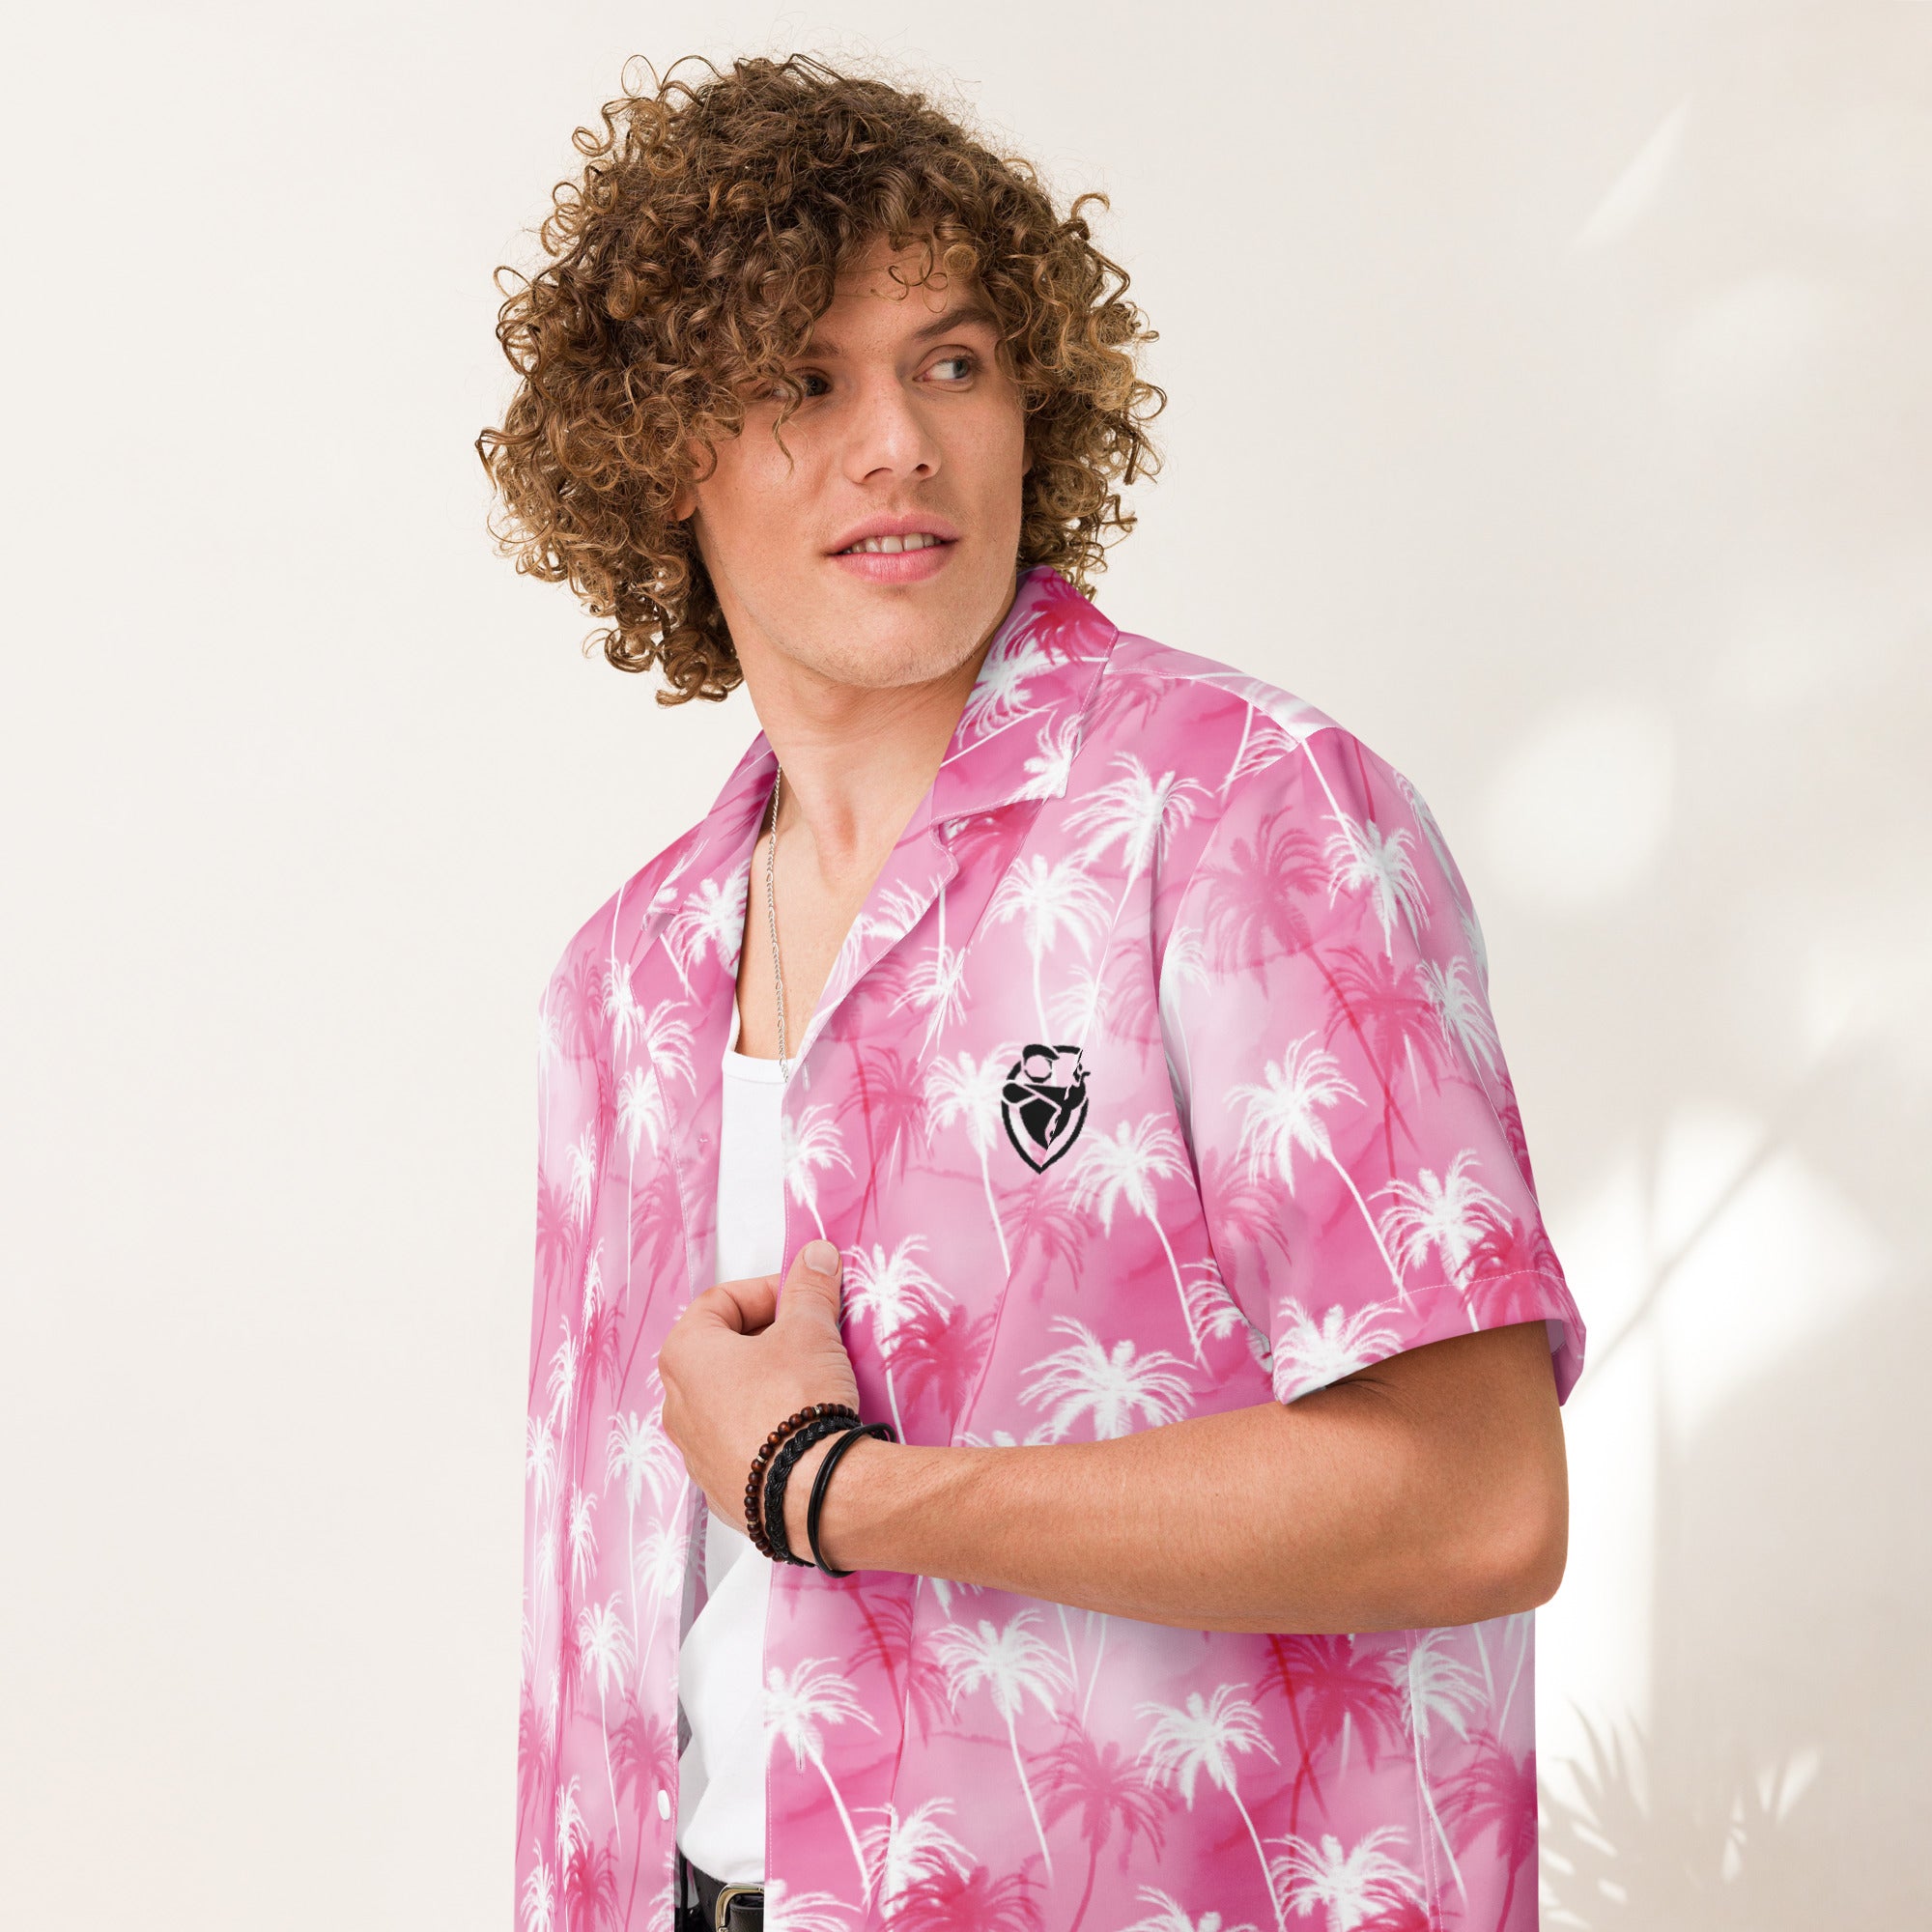 Breezy Buttonaire: Unisex Summer Shirt